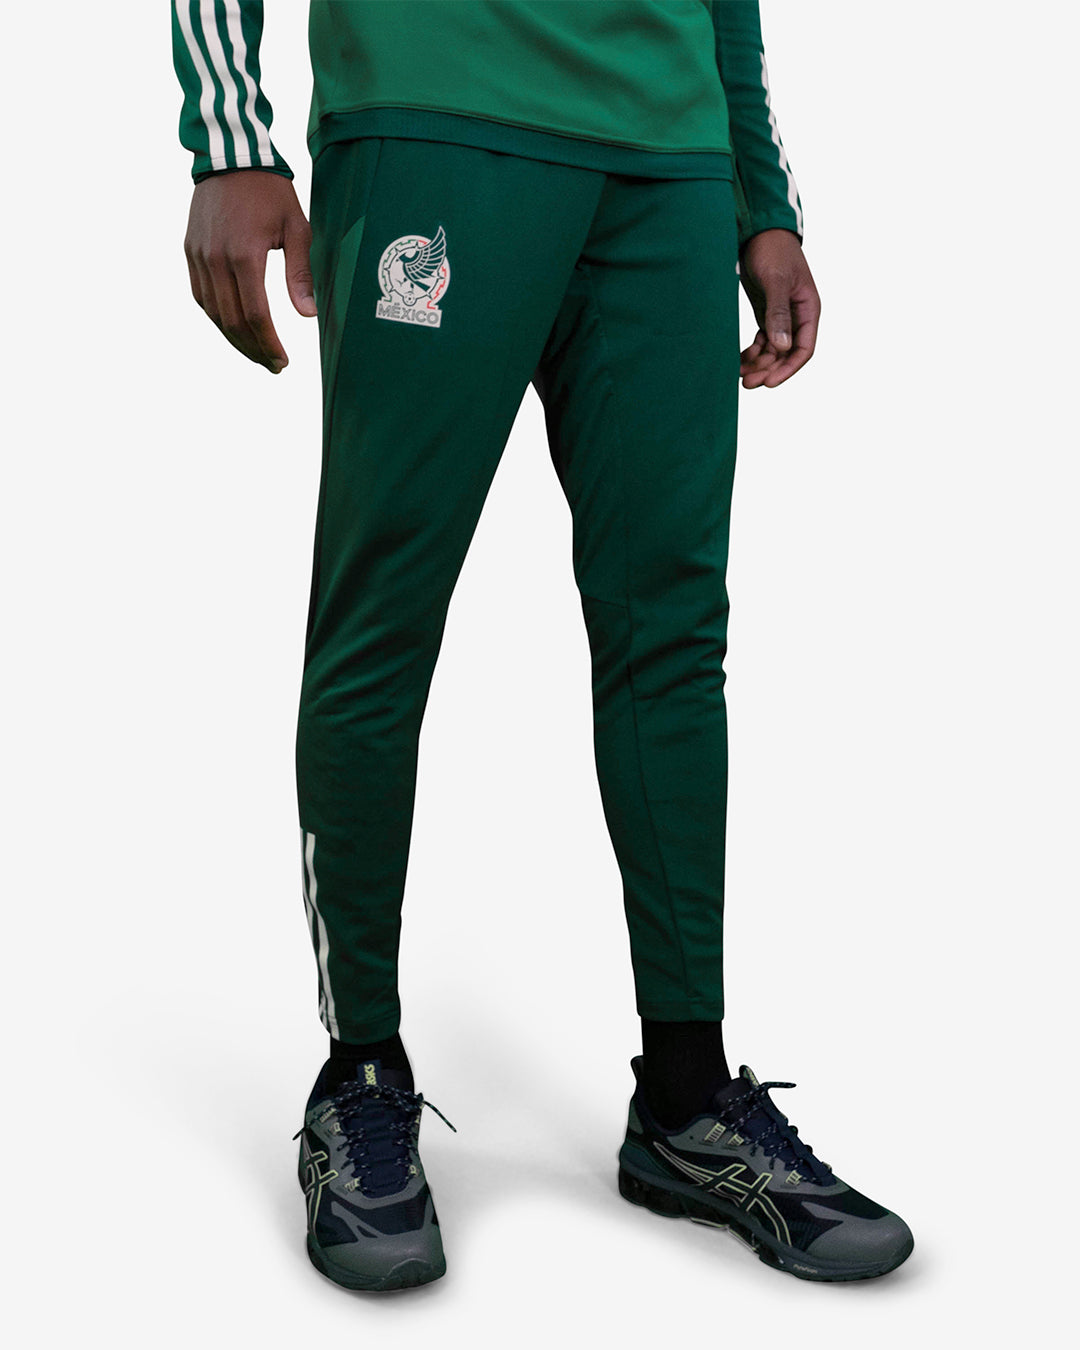 Pantalon d'entrainement Mexique 2022 - Vert/Blanc